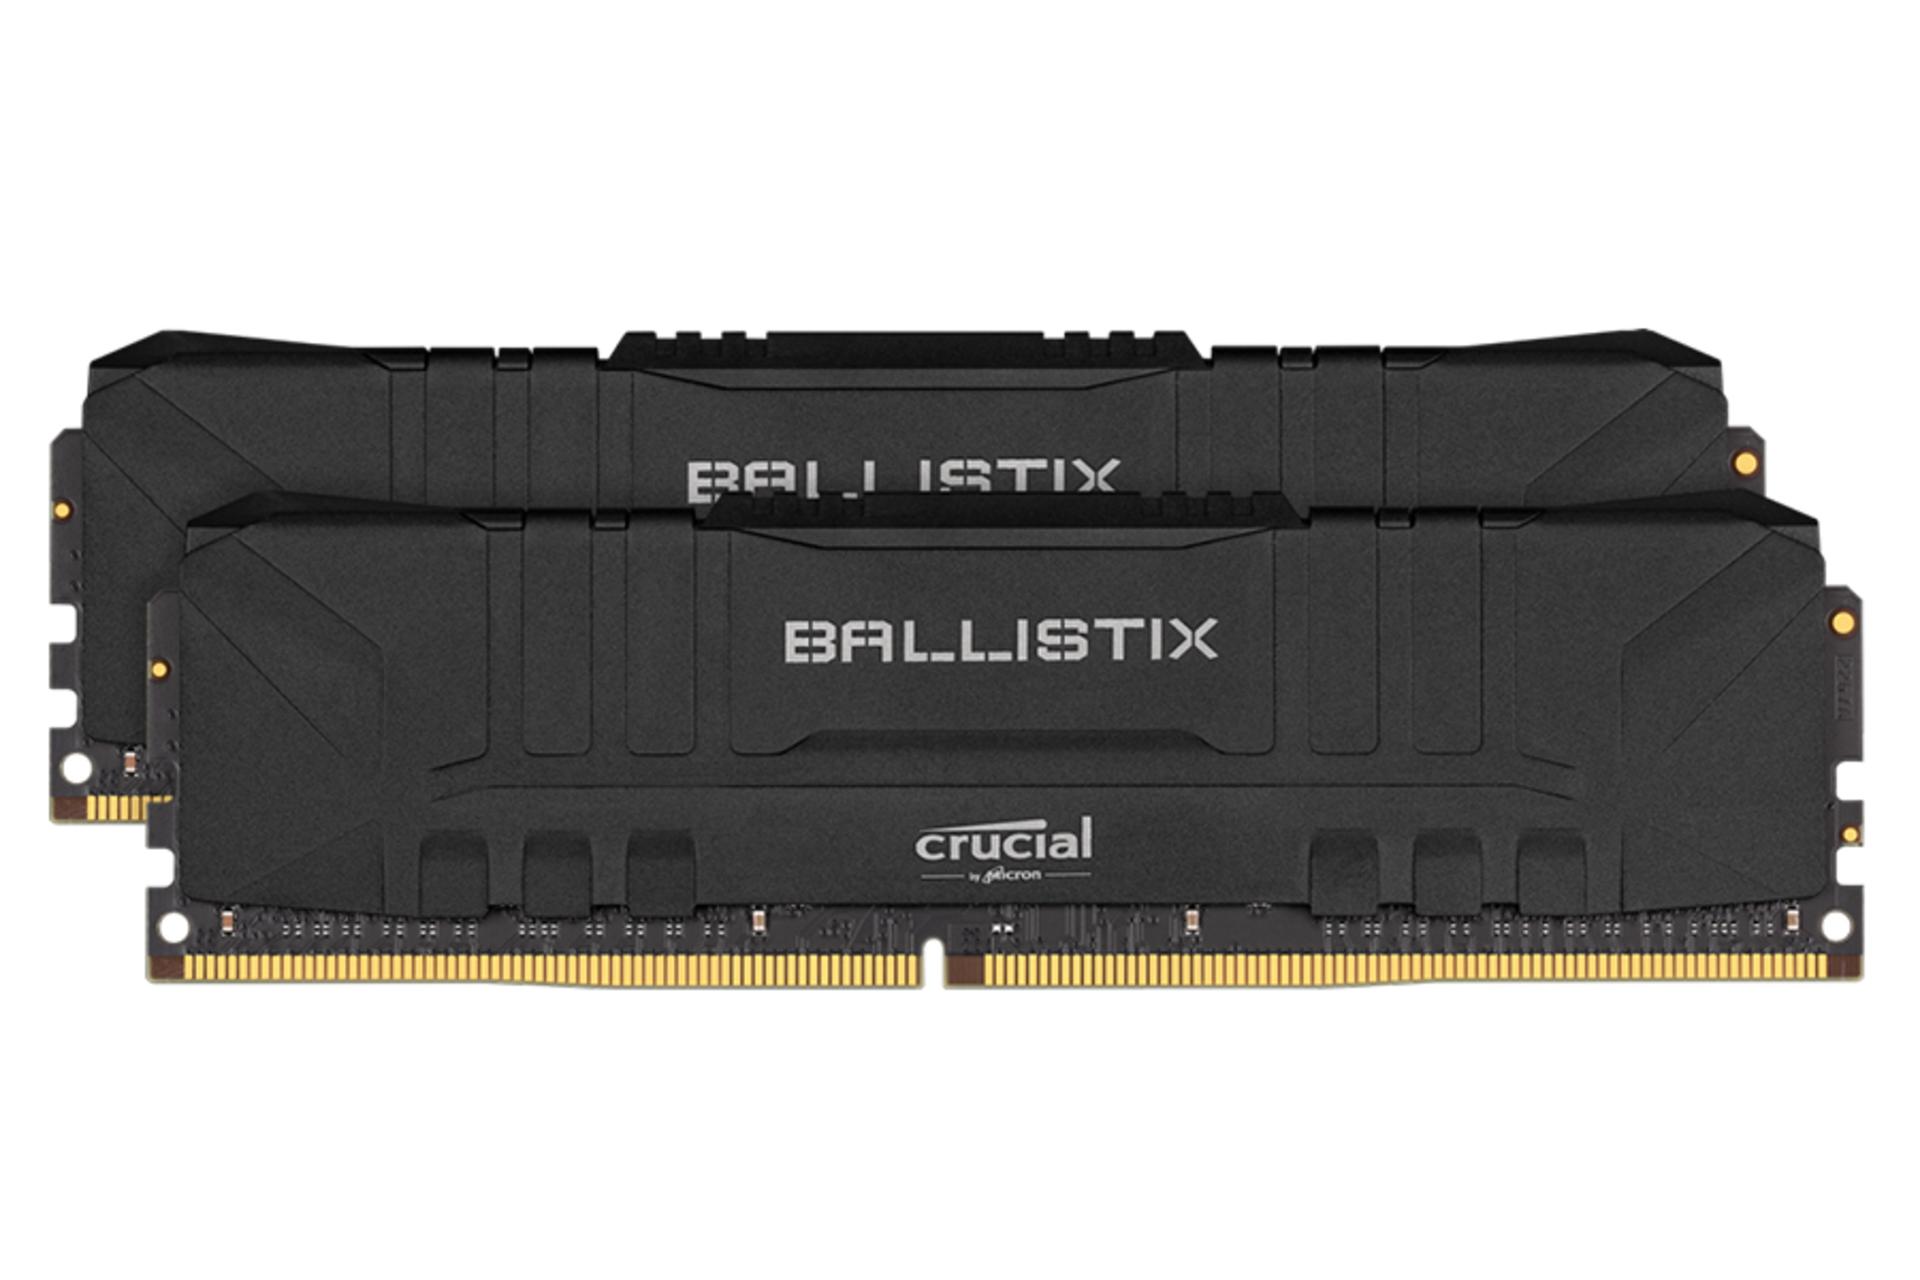 نمای جلو کروشیال Ballistix ظرفیت 32 (2x16) گیگابایت از نوع DDR4-3600